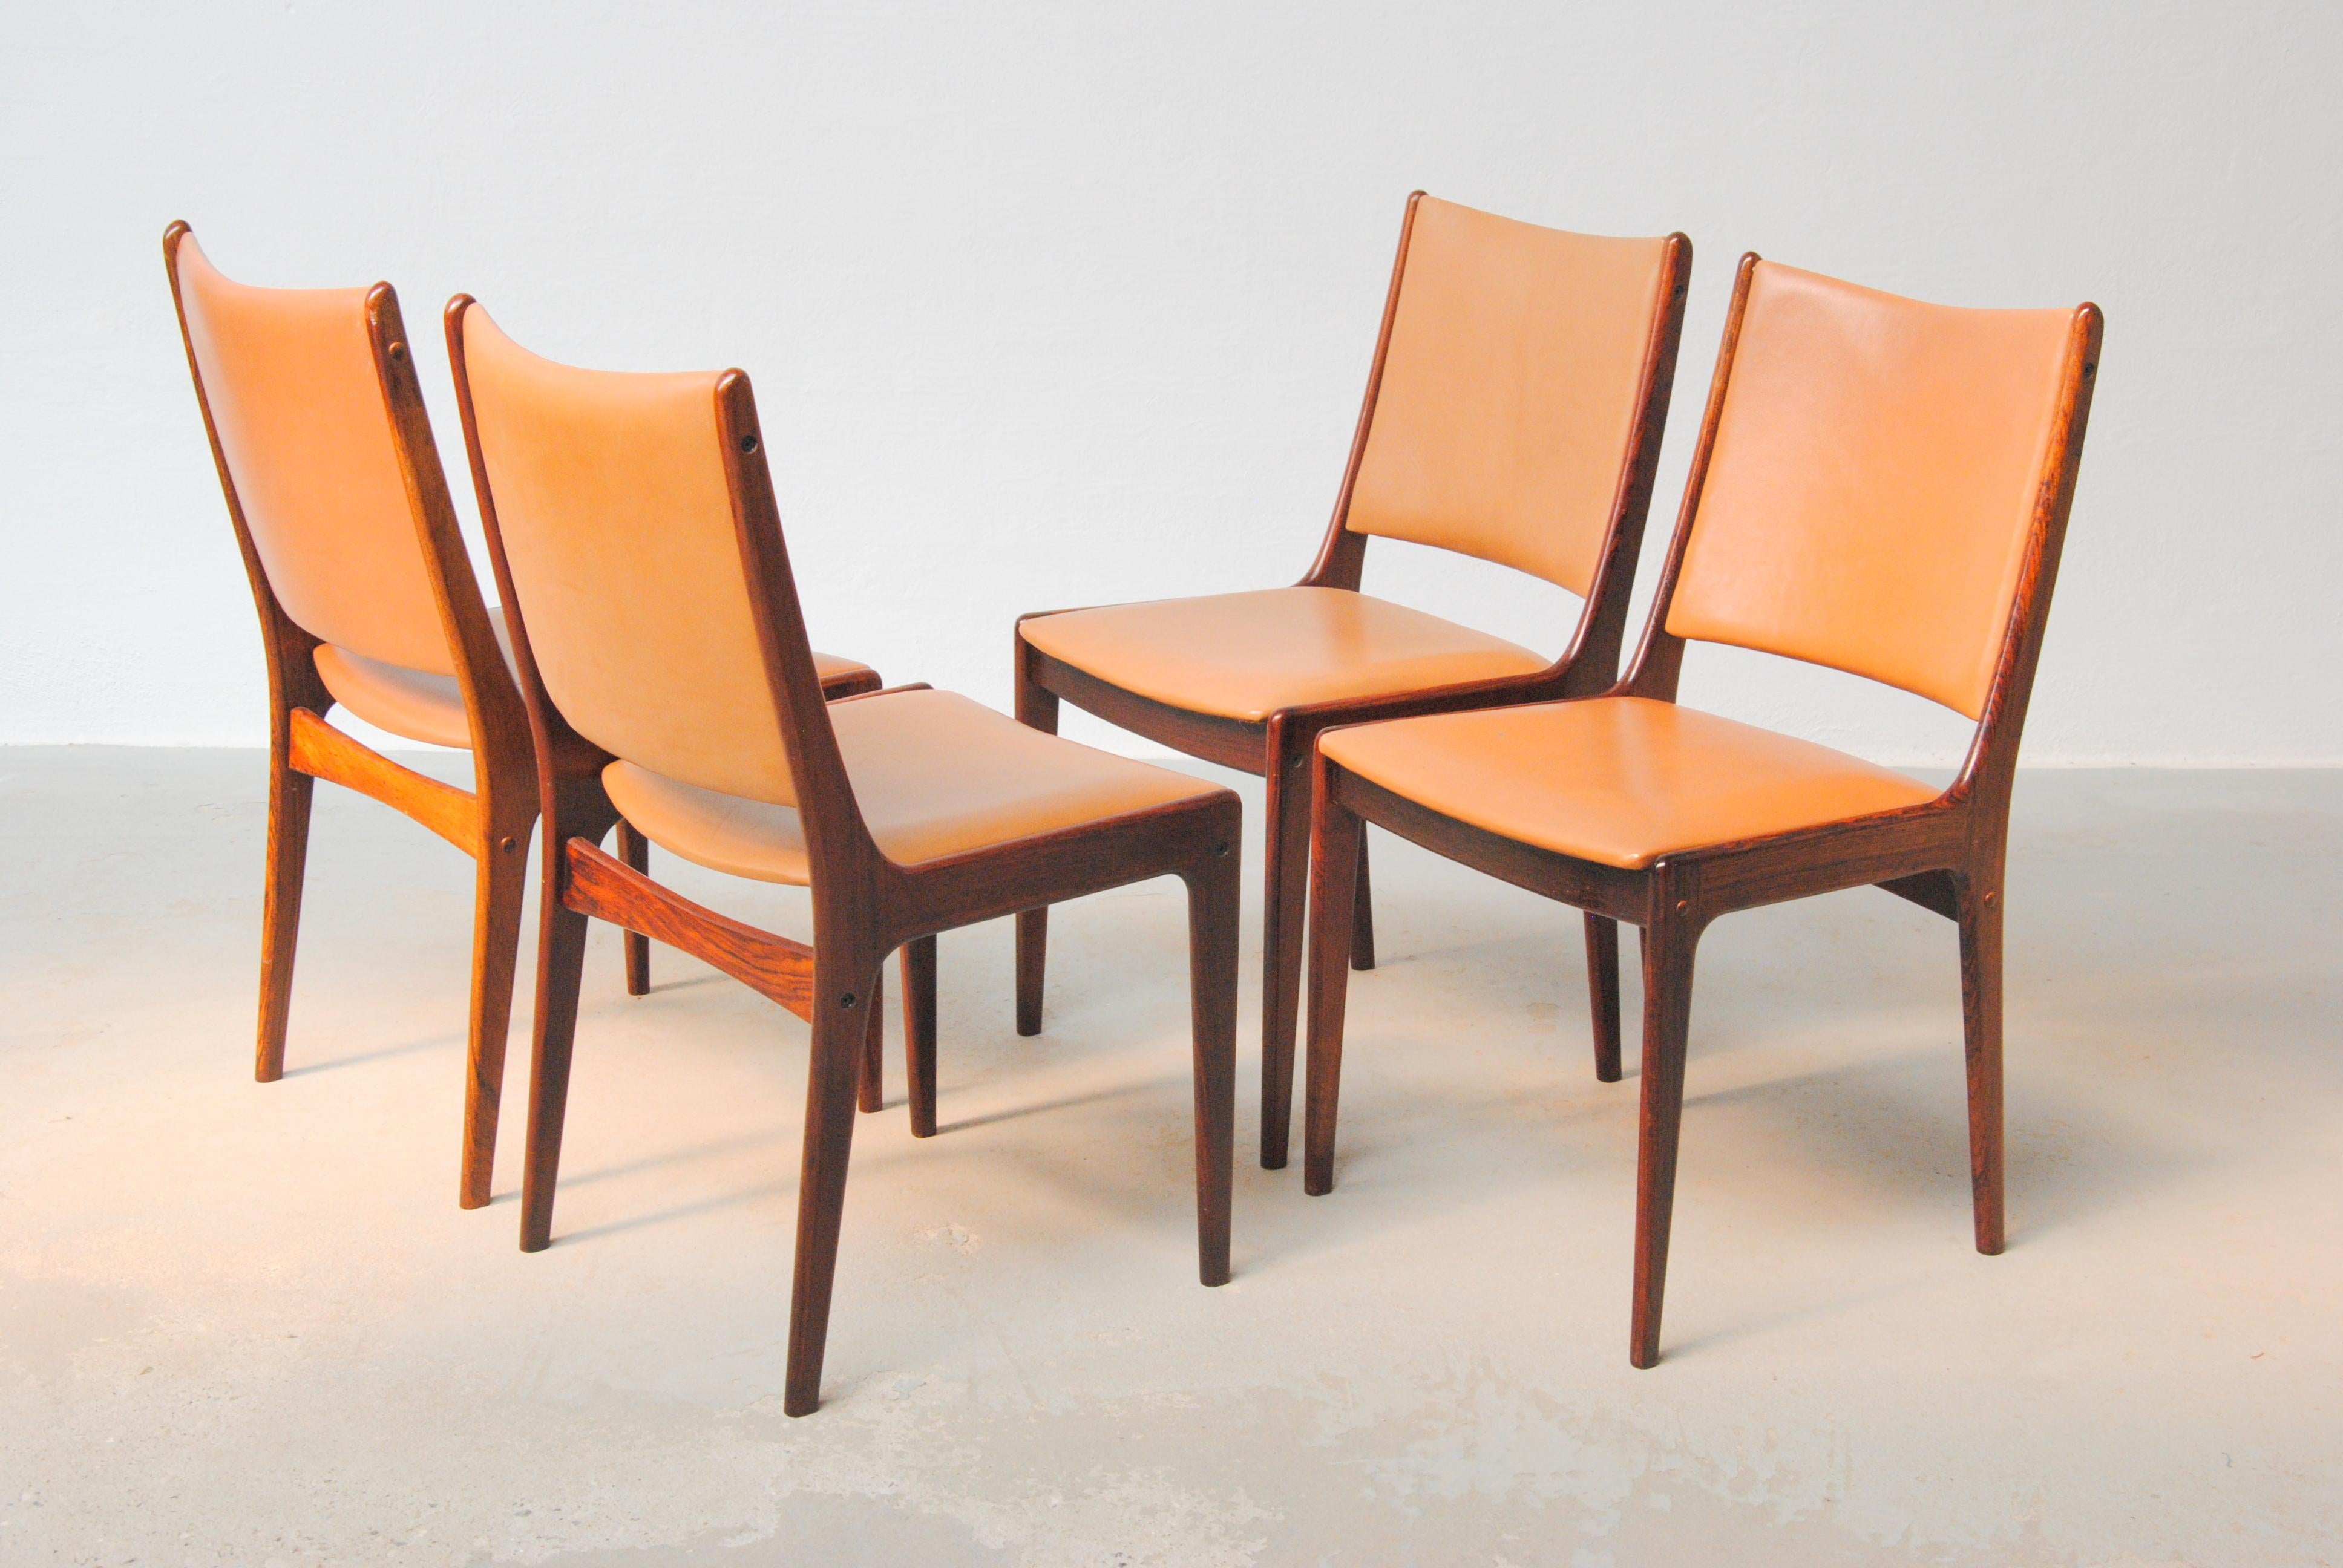 Vier vollständig restaurierte Johannes-Andersen-Esszimmerstühle aus Palisanderholz aus den 1960er Jahren von Uldum Møbler, Dänemark.

Die Esszimmerstühle zeichnen sich durch ein schlichtes, aber elegantes Design aus, das in den meisten Häusern eine